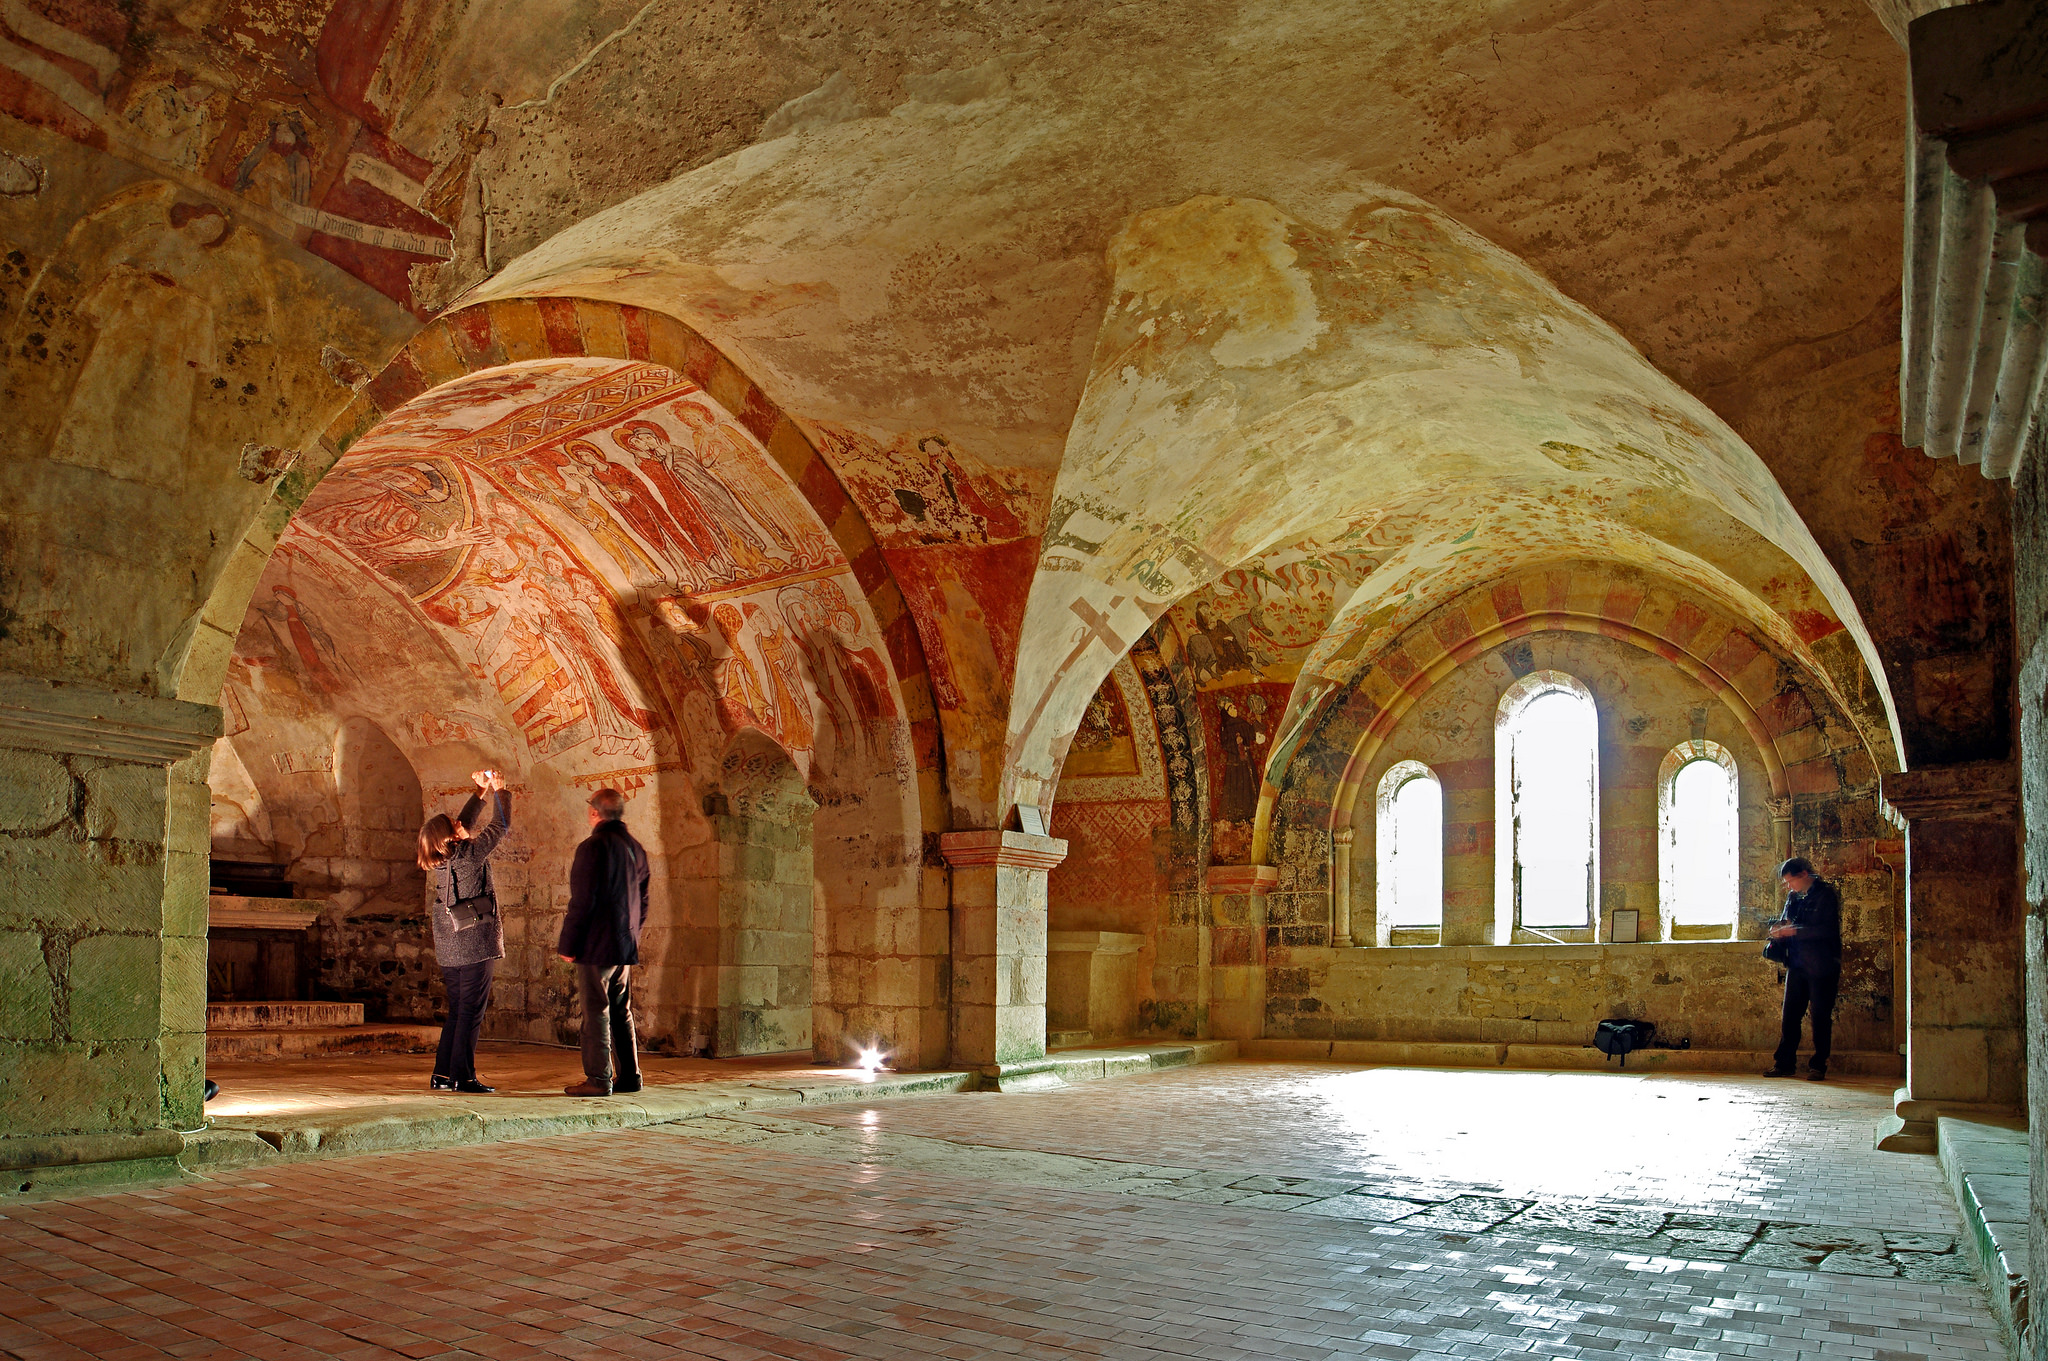 Unterhalb der Kirchen befinden sich oft wunderschöne, kraftvolle und heilsame Räume. Die abgebildete Krypta ist unter der Kathedrale von Notre Dame zu finden. Foto (C) Daniel Jolivet, flickr CC BY 2.0